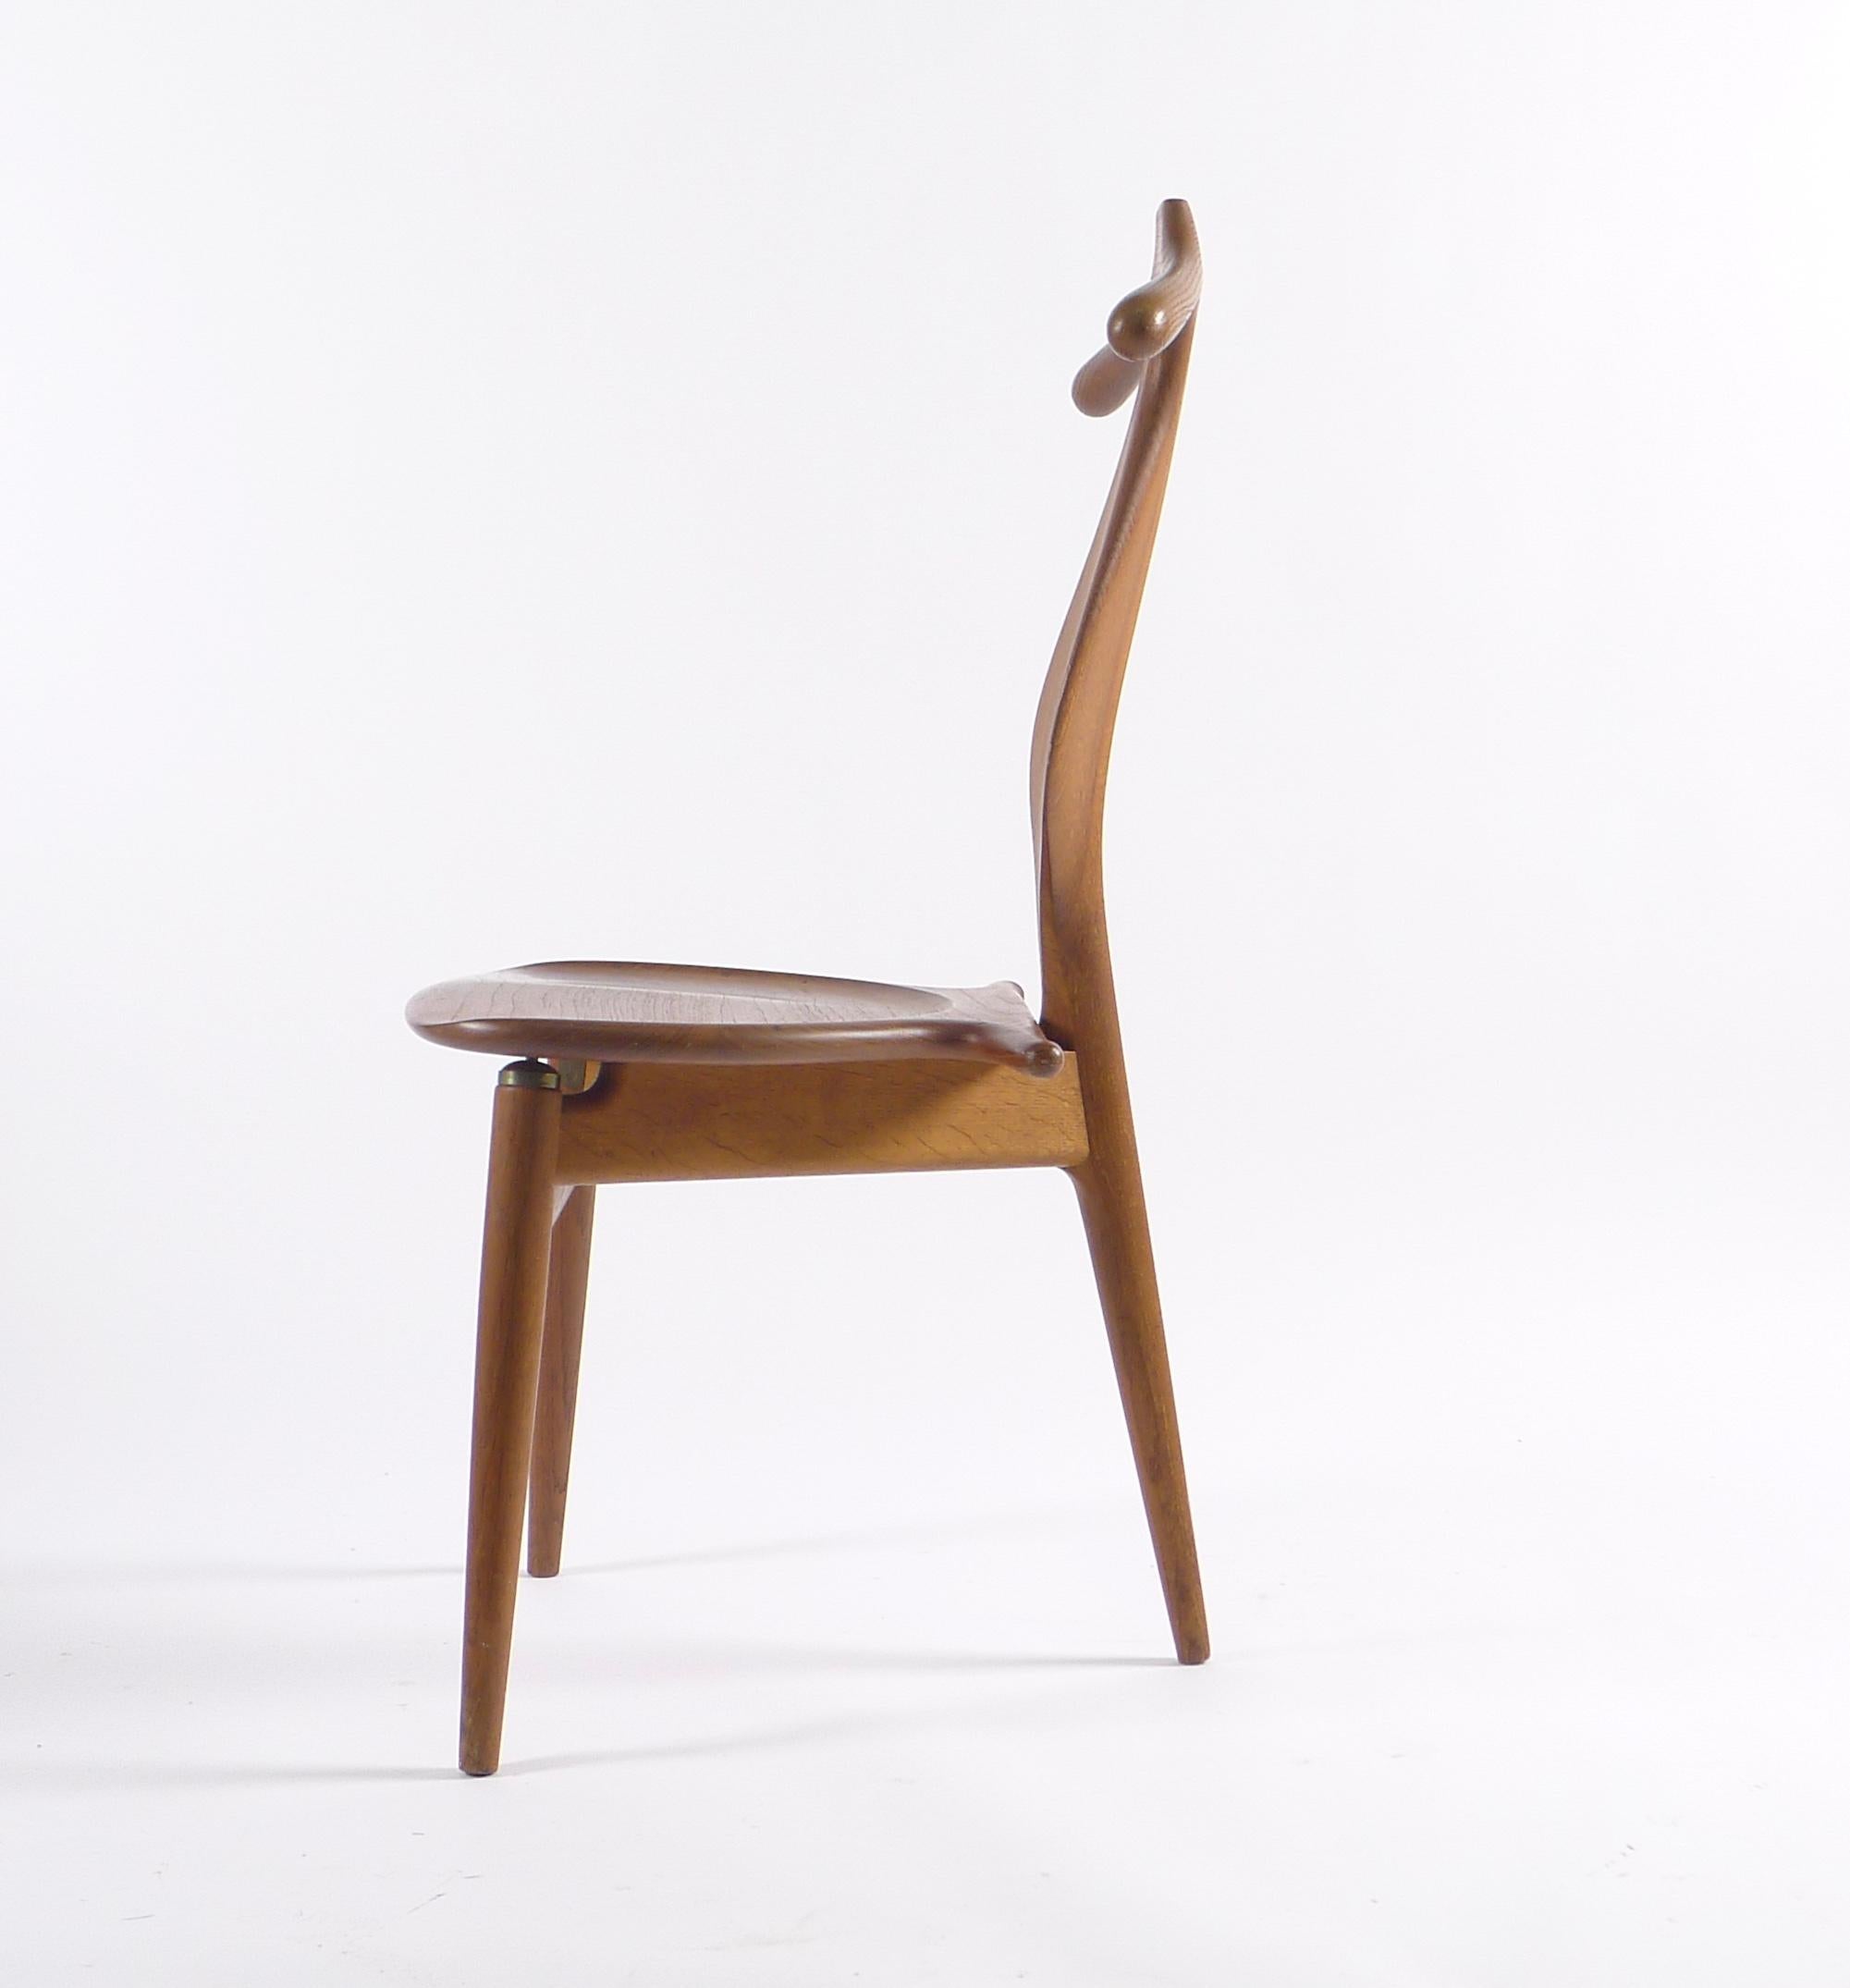 Hans J Wegner (1914-2007), Valet Chair, Modell Nr. JH540, Teakholz und Eiche, Originalausgabe hergestellt von Johannes Hansen, 1953. 

Unterseite mit Herstellermarke versehen: JOHANNES HANSEN/KOPENHAGEN/DÄNEMARK

Dieser seltene Stuhl ist eines